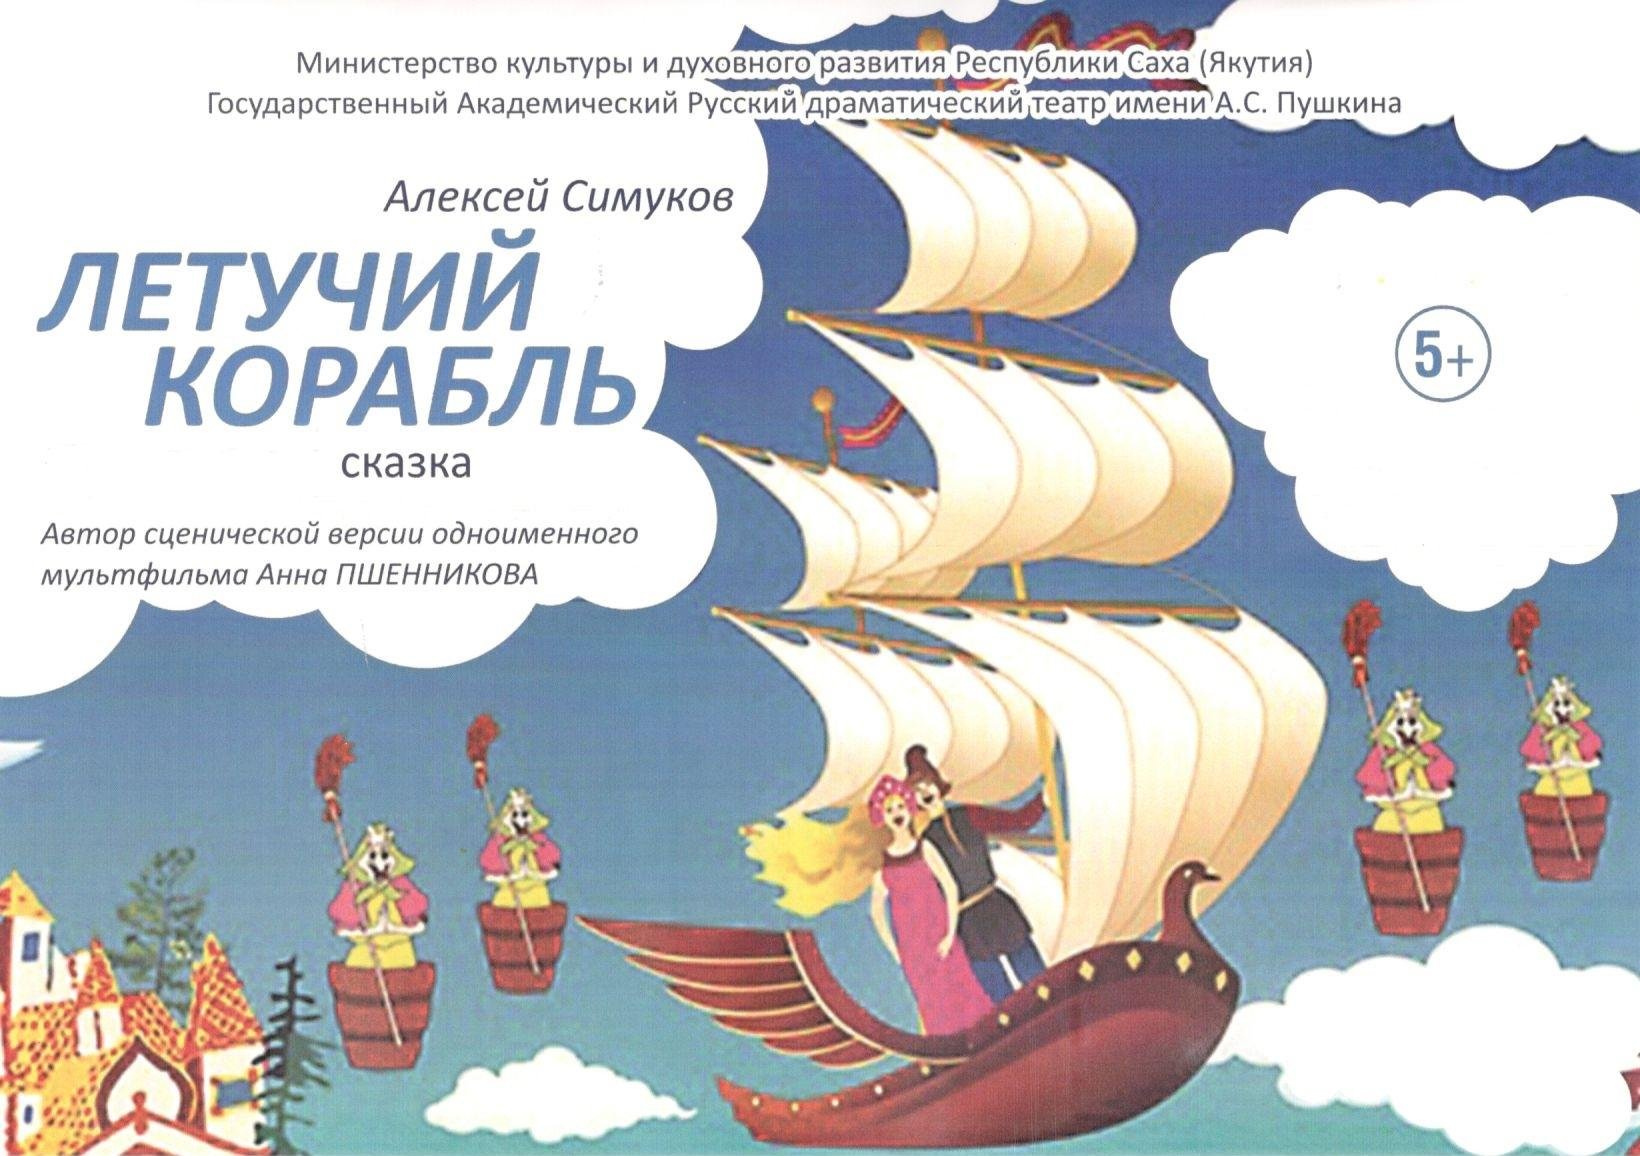 Кто играл царевну в летучем корабле. Иллюстрация к сказке Летучий корабль.